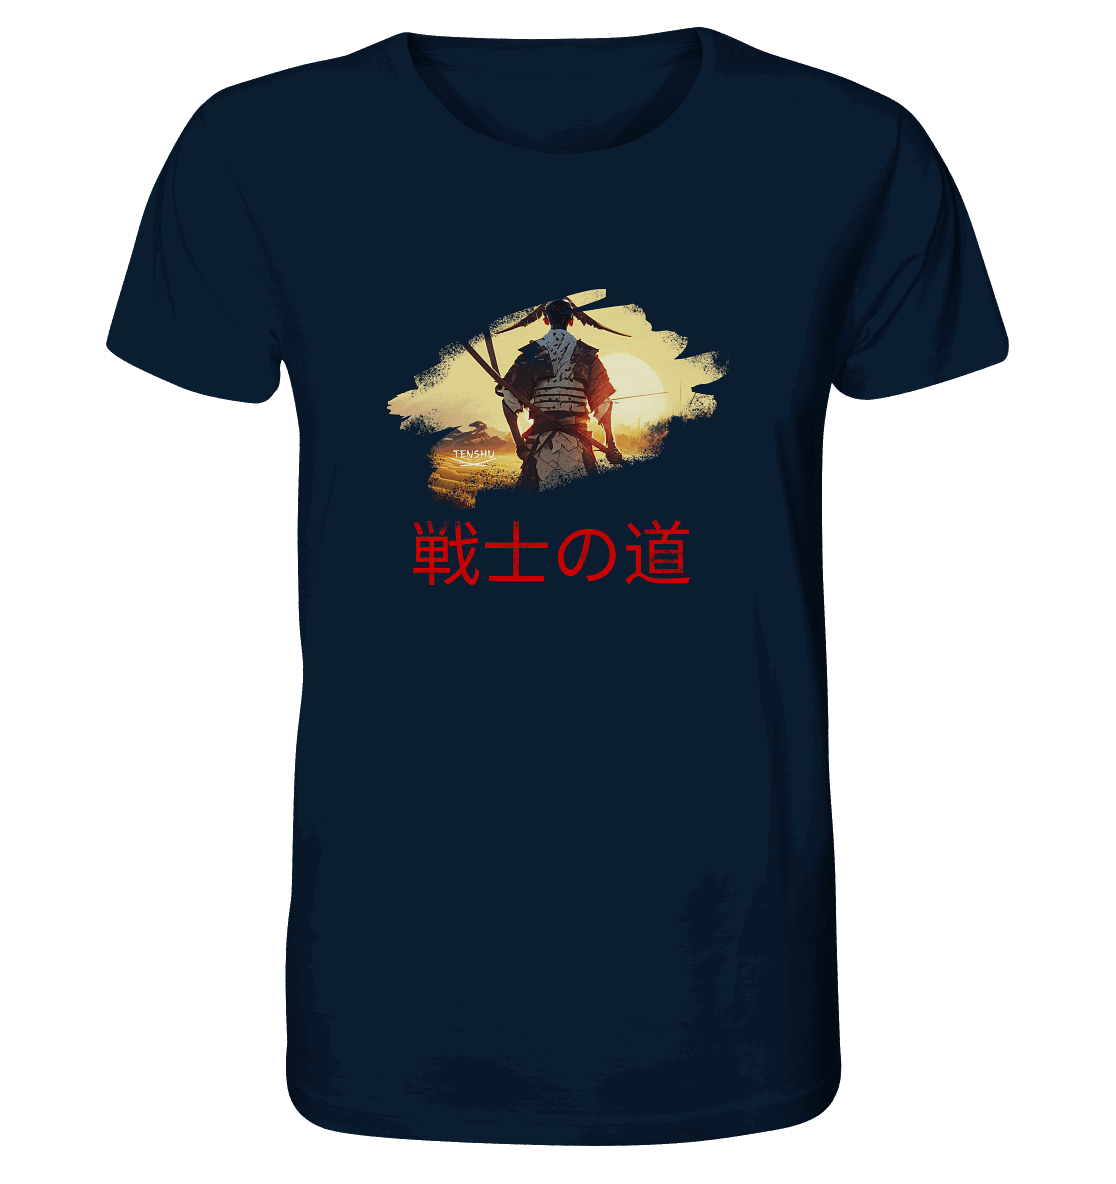 Tenshu / Der Weg des Kriegers - Organic Shirt